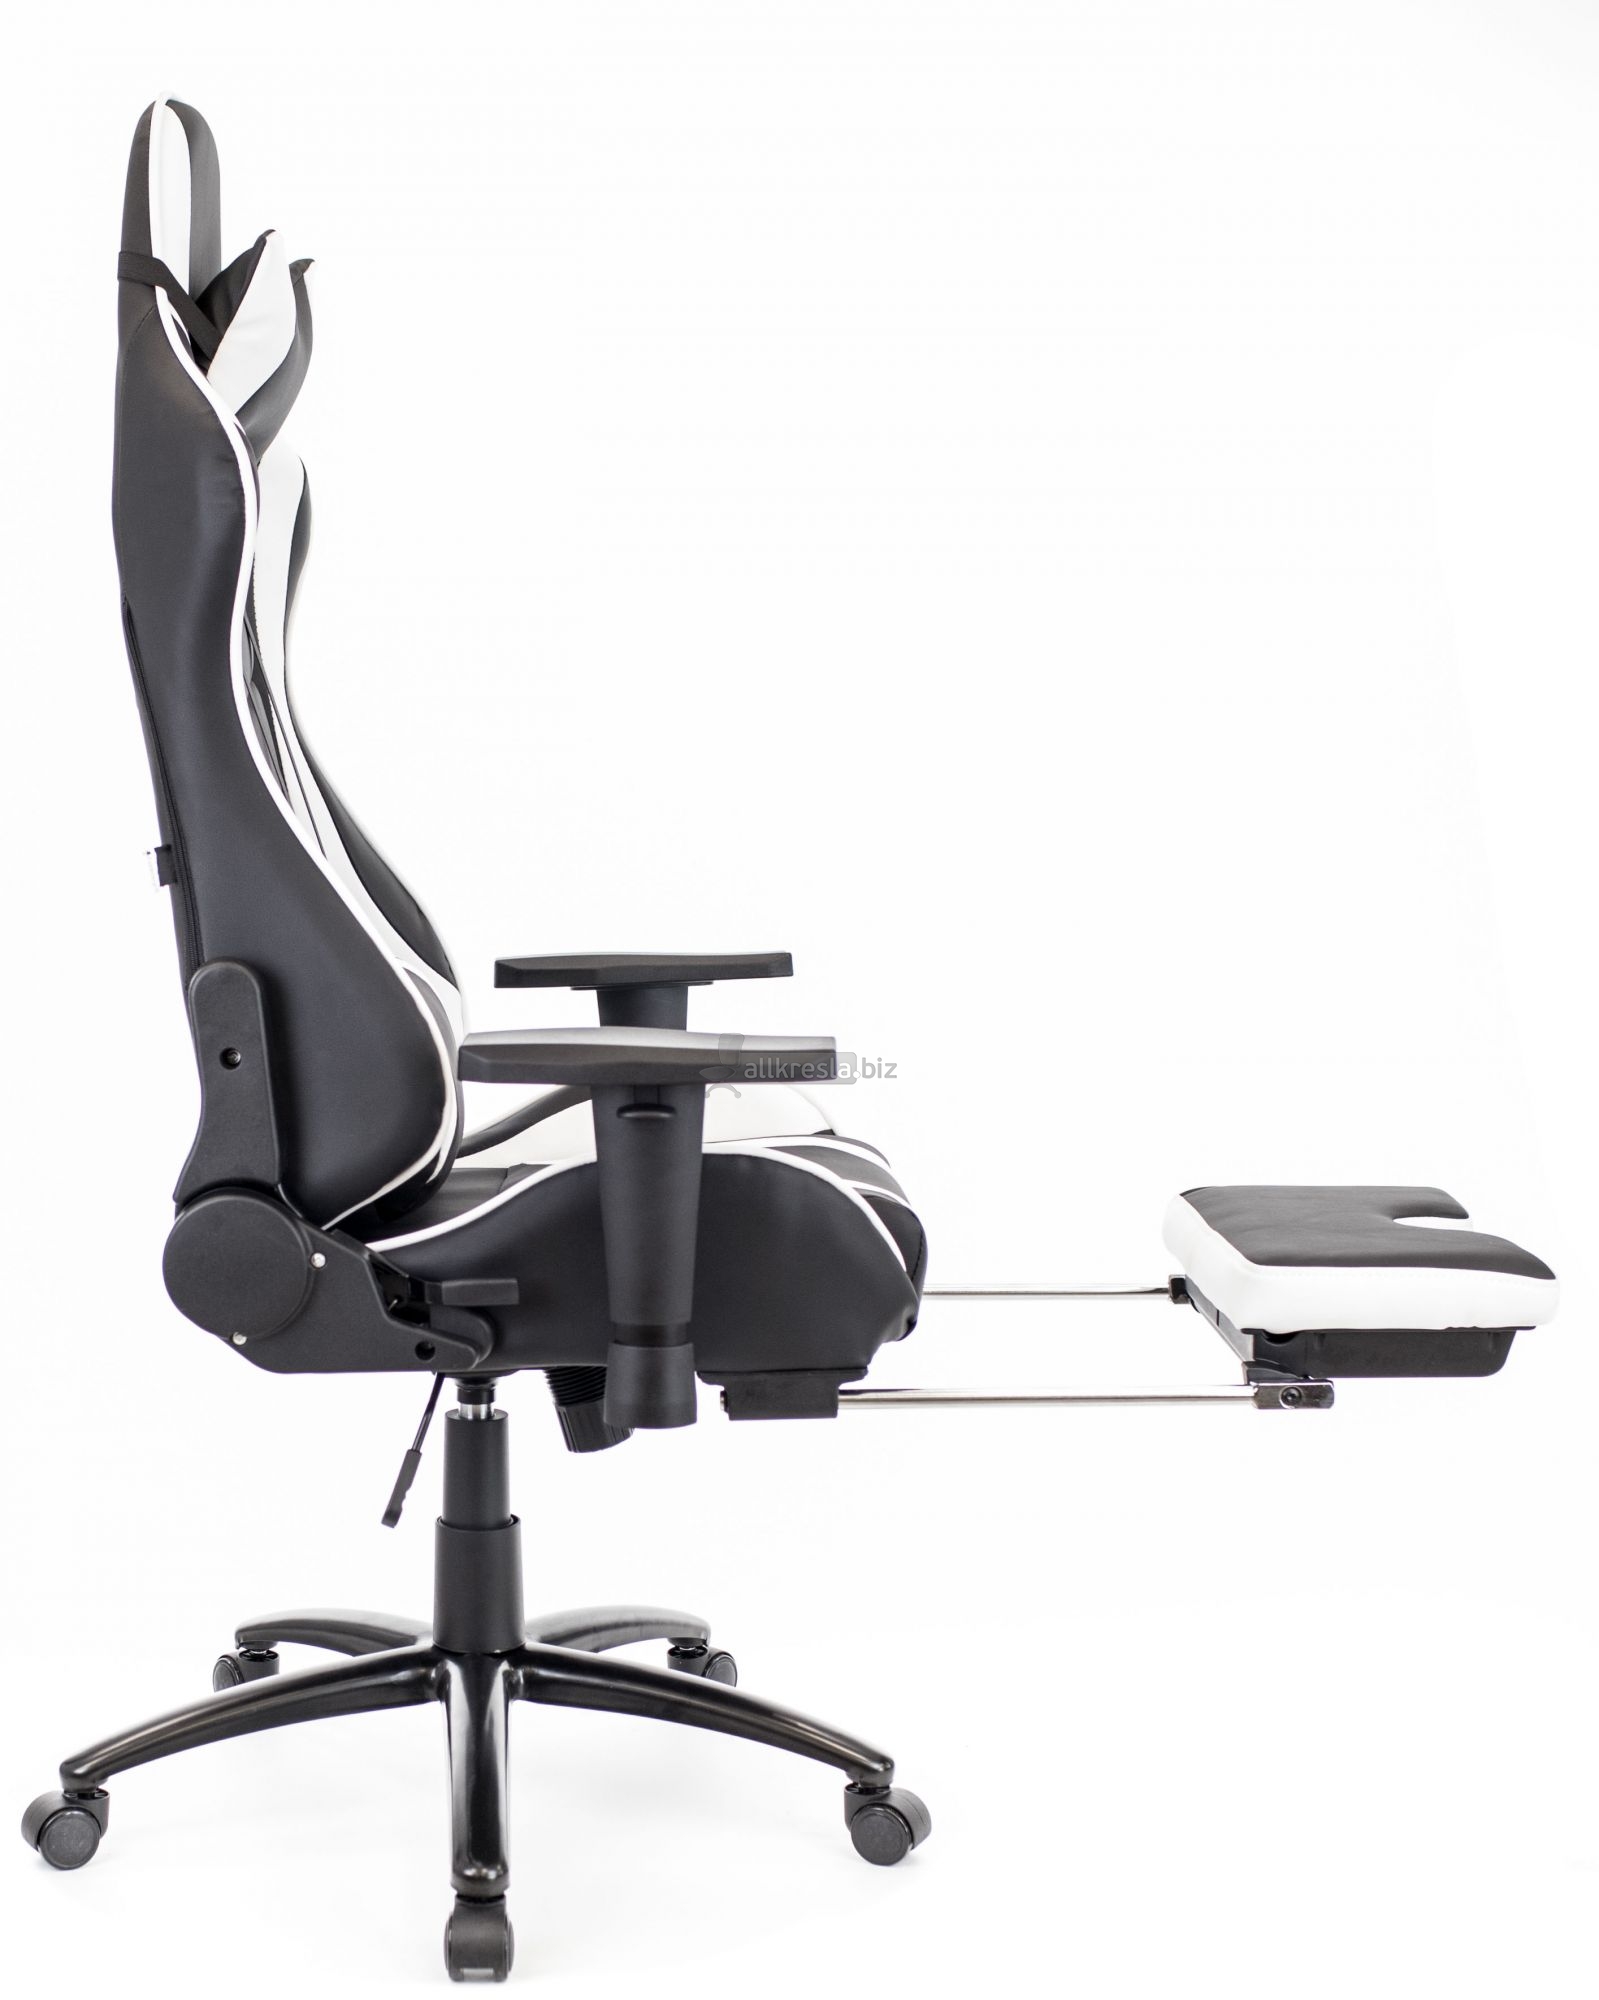 Купить геймерское кресло EvP Lotus S1 (Лотос)